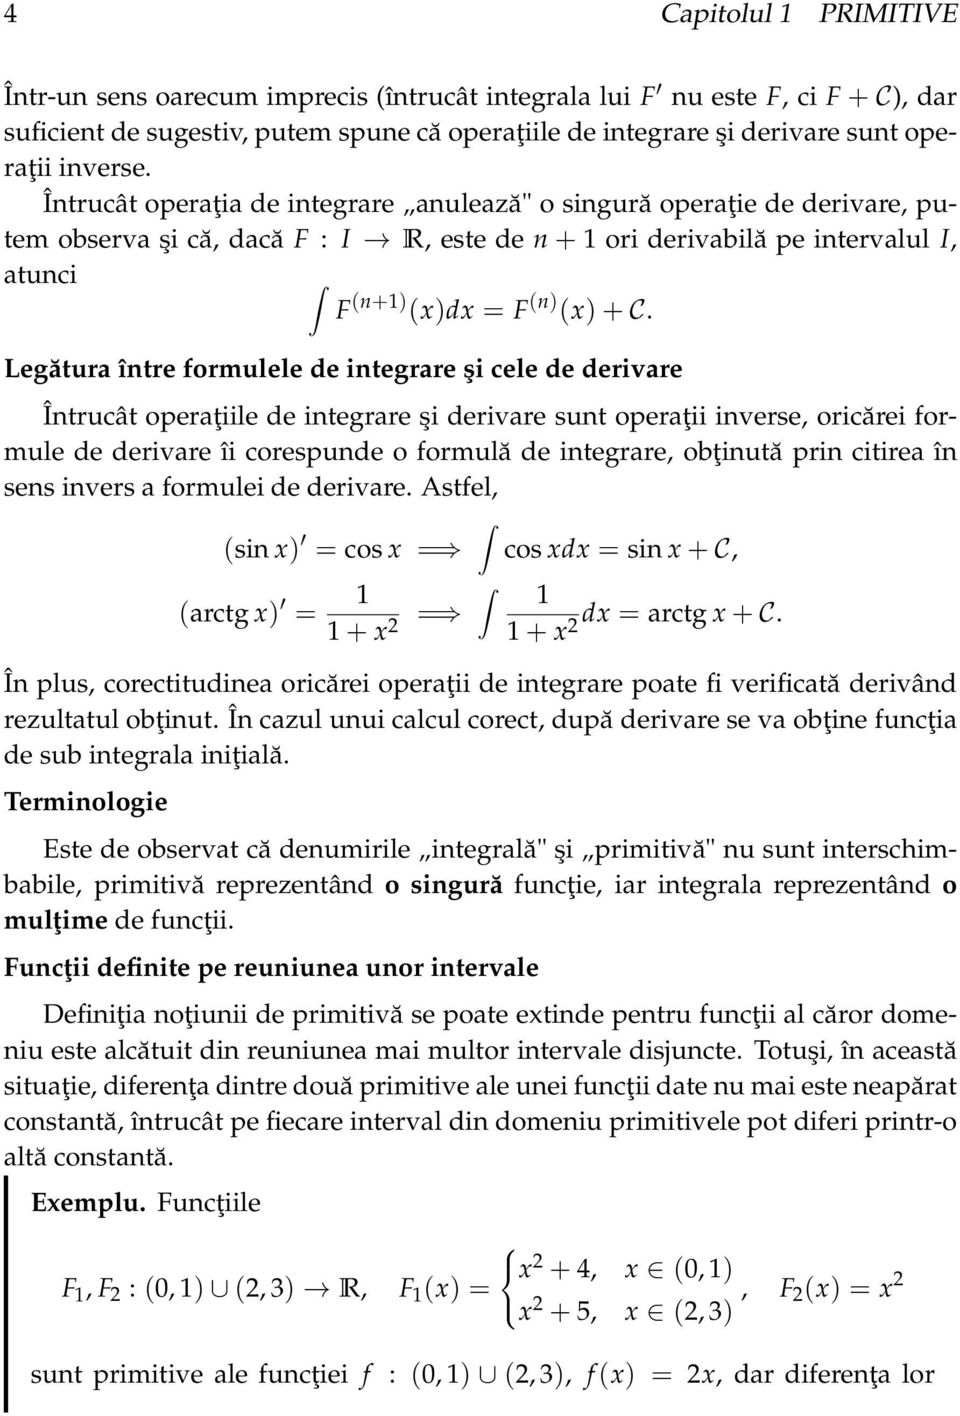 Legătur între formulele de integrre şi cele de derivre Întrucât operţiile de integrre şi derivre sunt operţii inverse, oricărei formule de derivre îi corespunde o formulă de integrre, obţinută prin